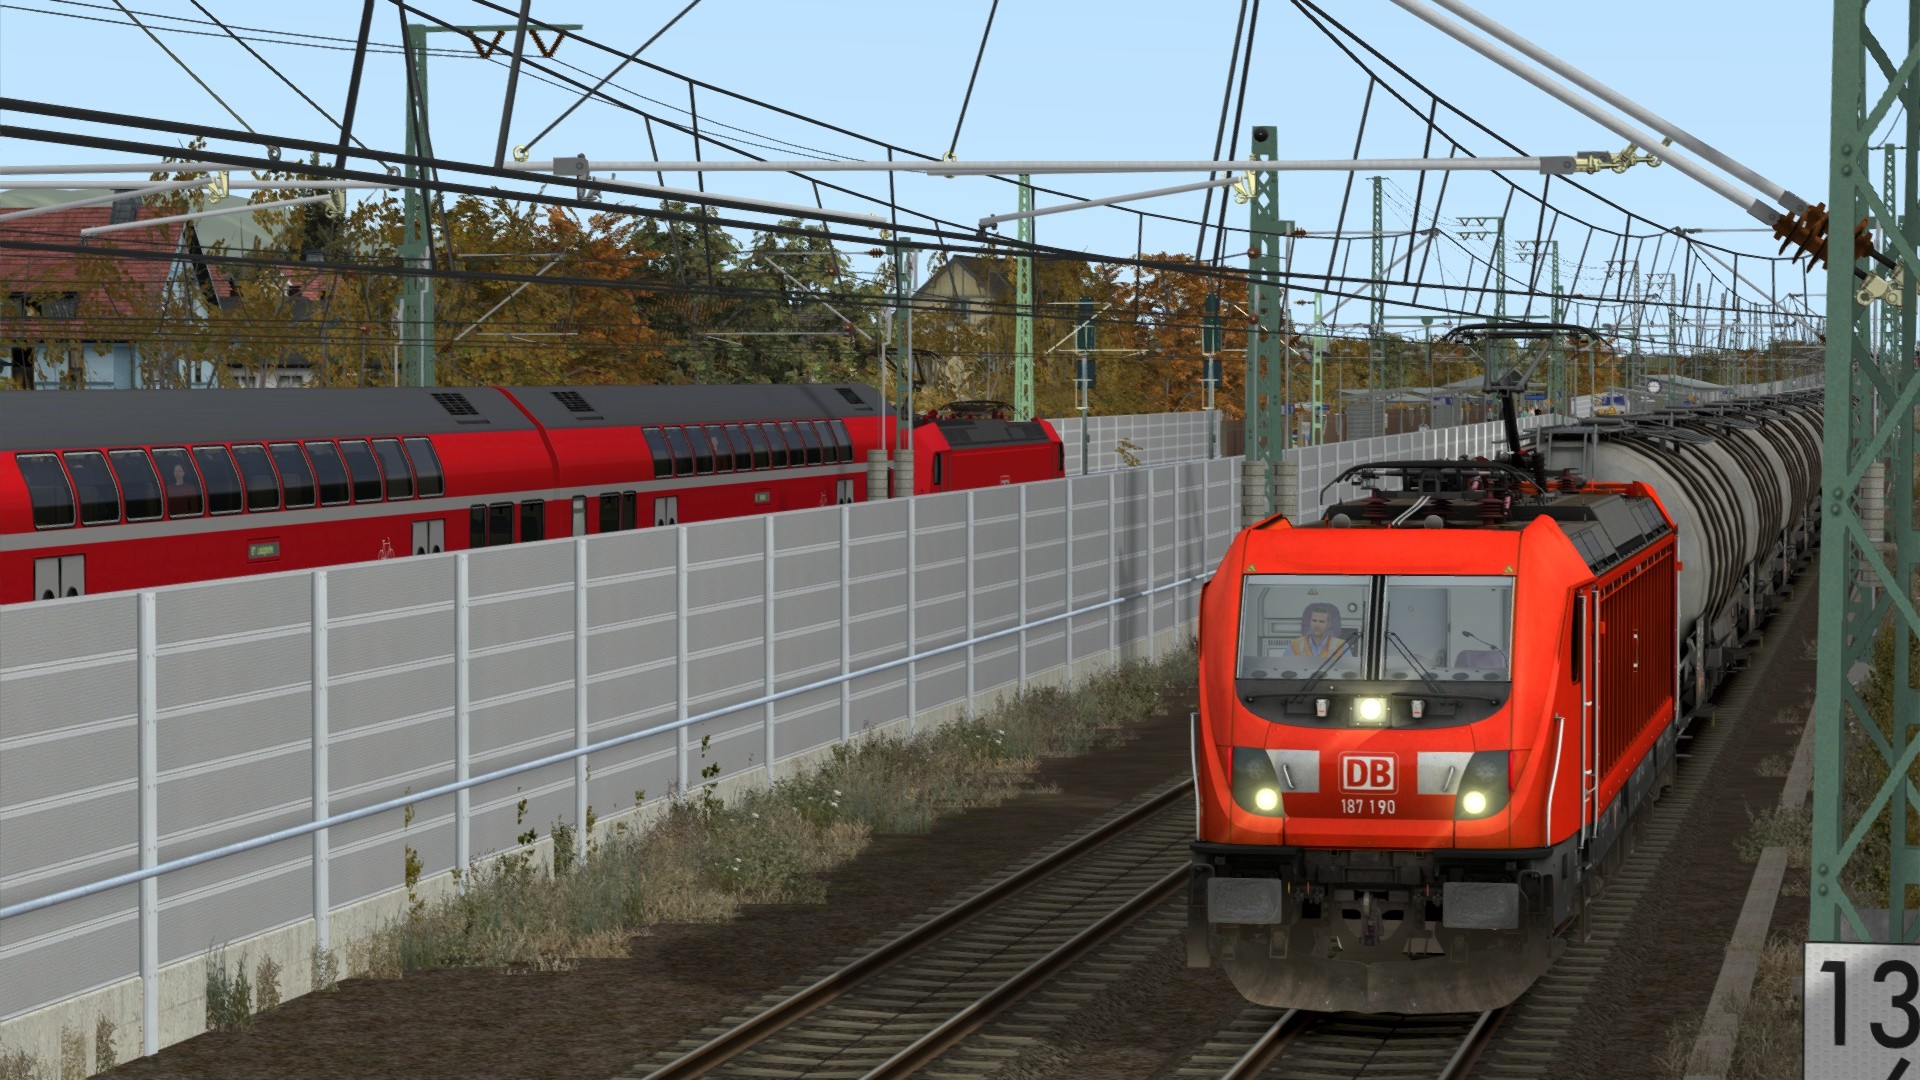 Train Simulator: DB BR 187 Loco Add-On on Steam